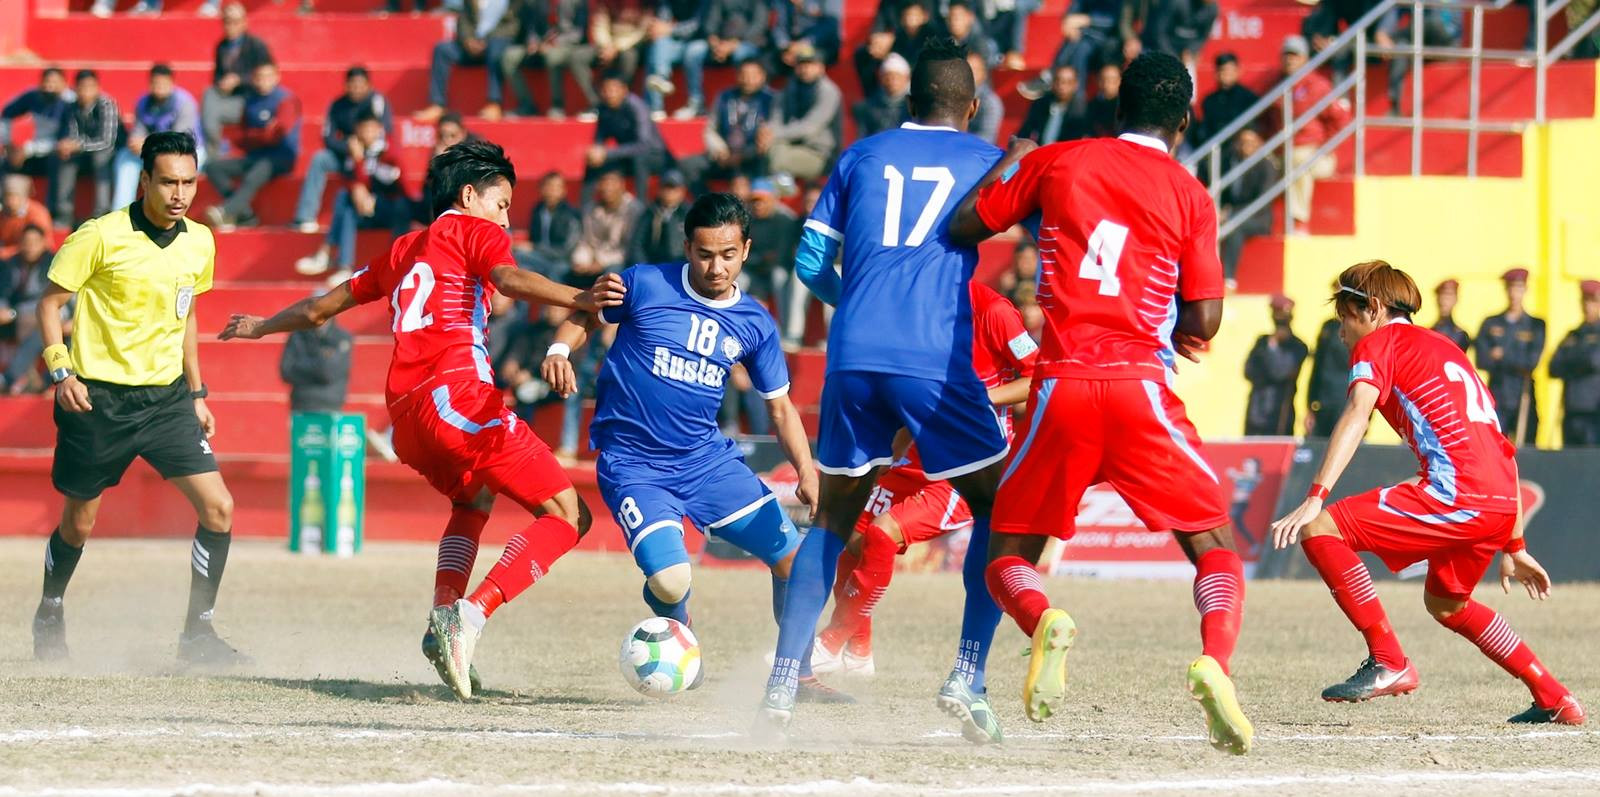 नेपालका फुटबल क्लब अब प्राइभेट लिमिटेडमा जाने